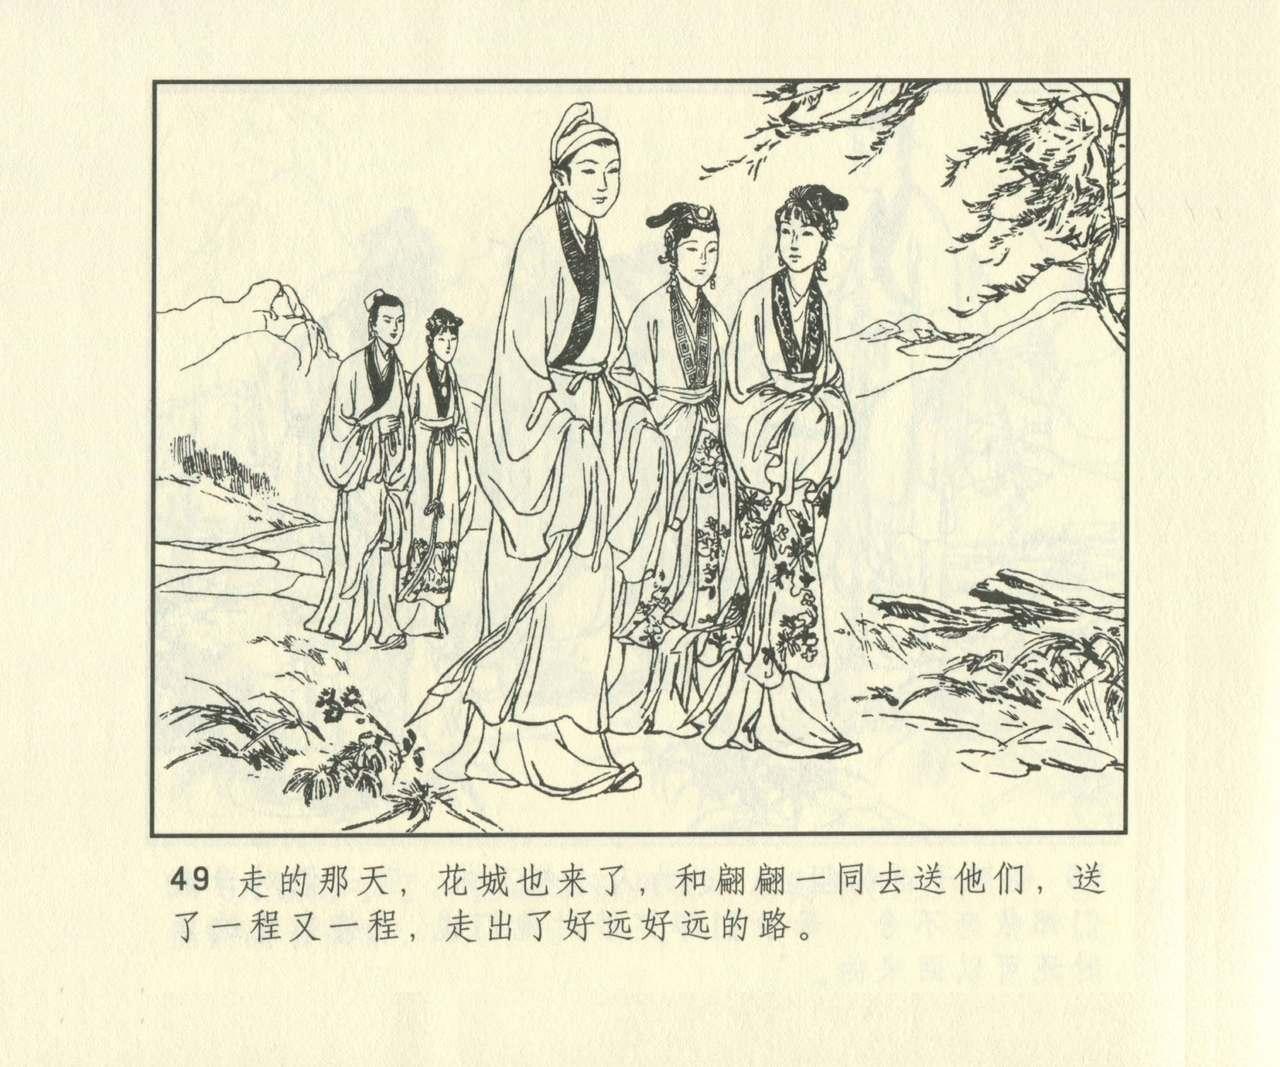 聊斋志异 张玮等绘 天津人民美术出版社 卷二十一 ~ 三十 665